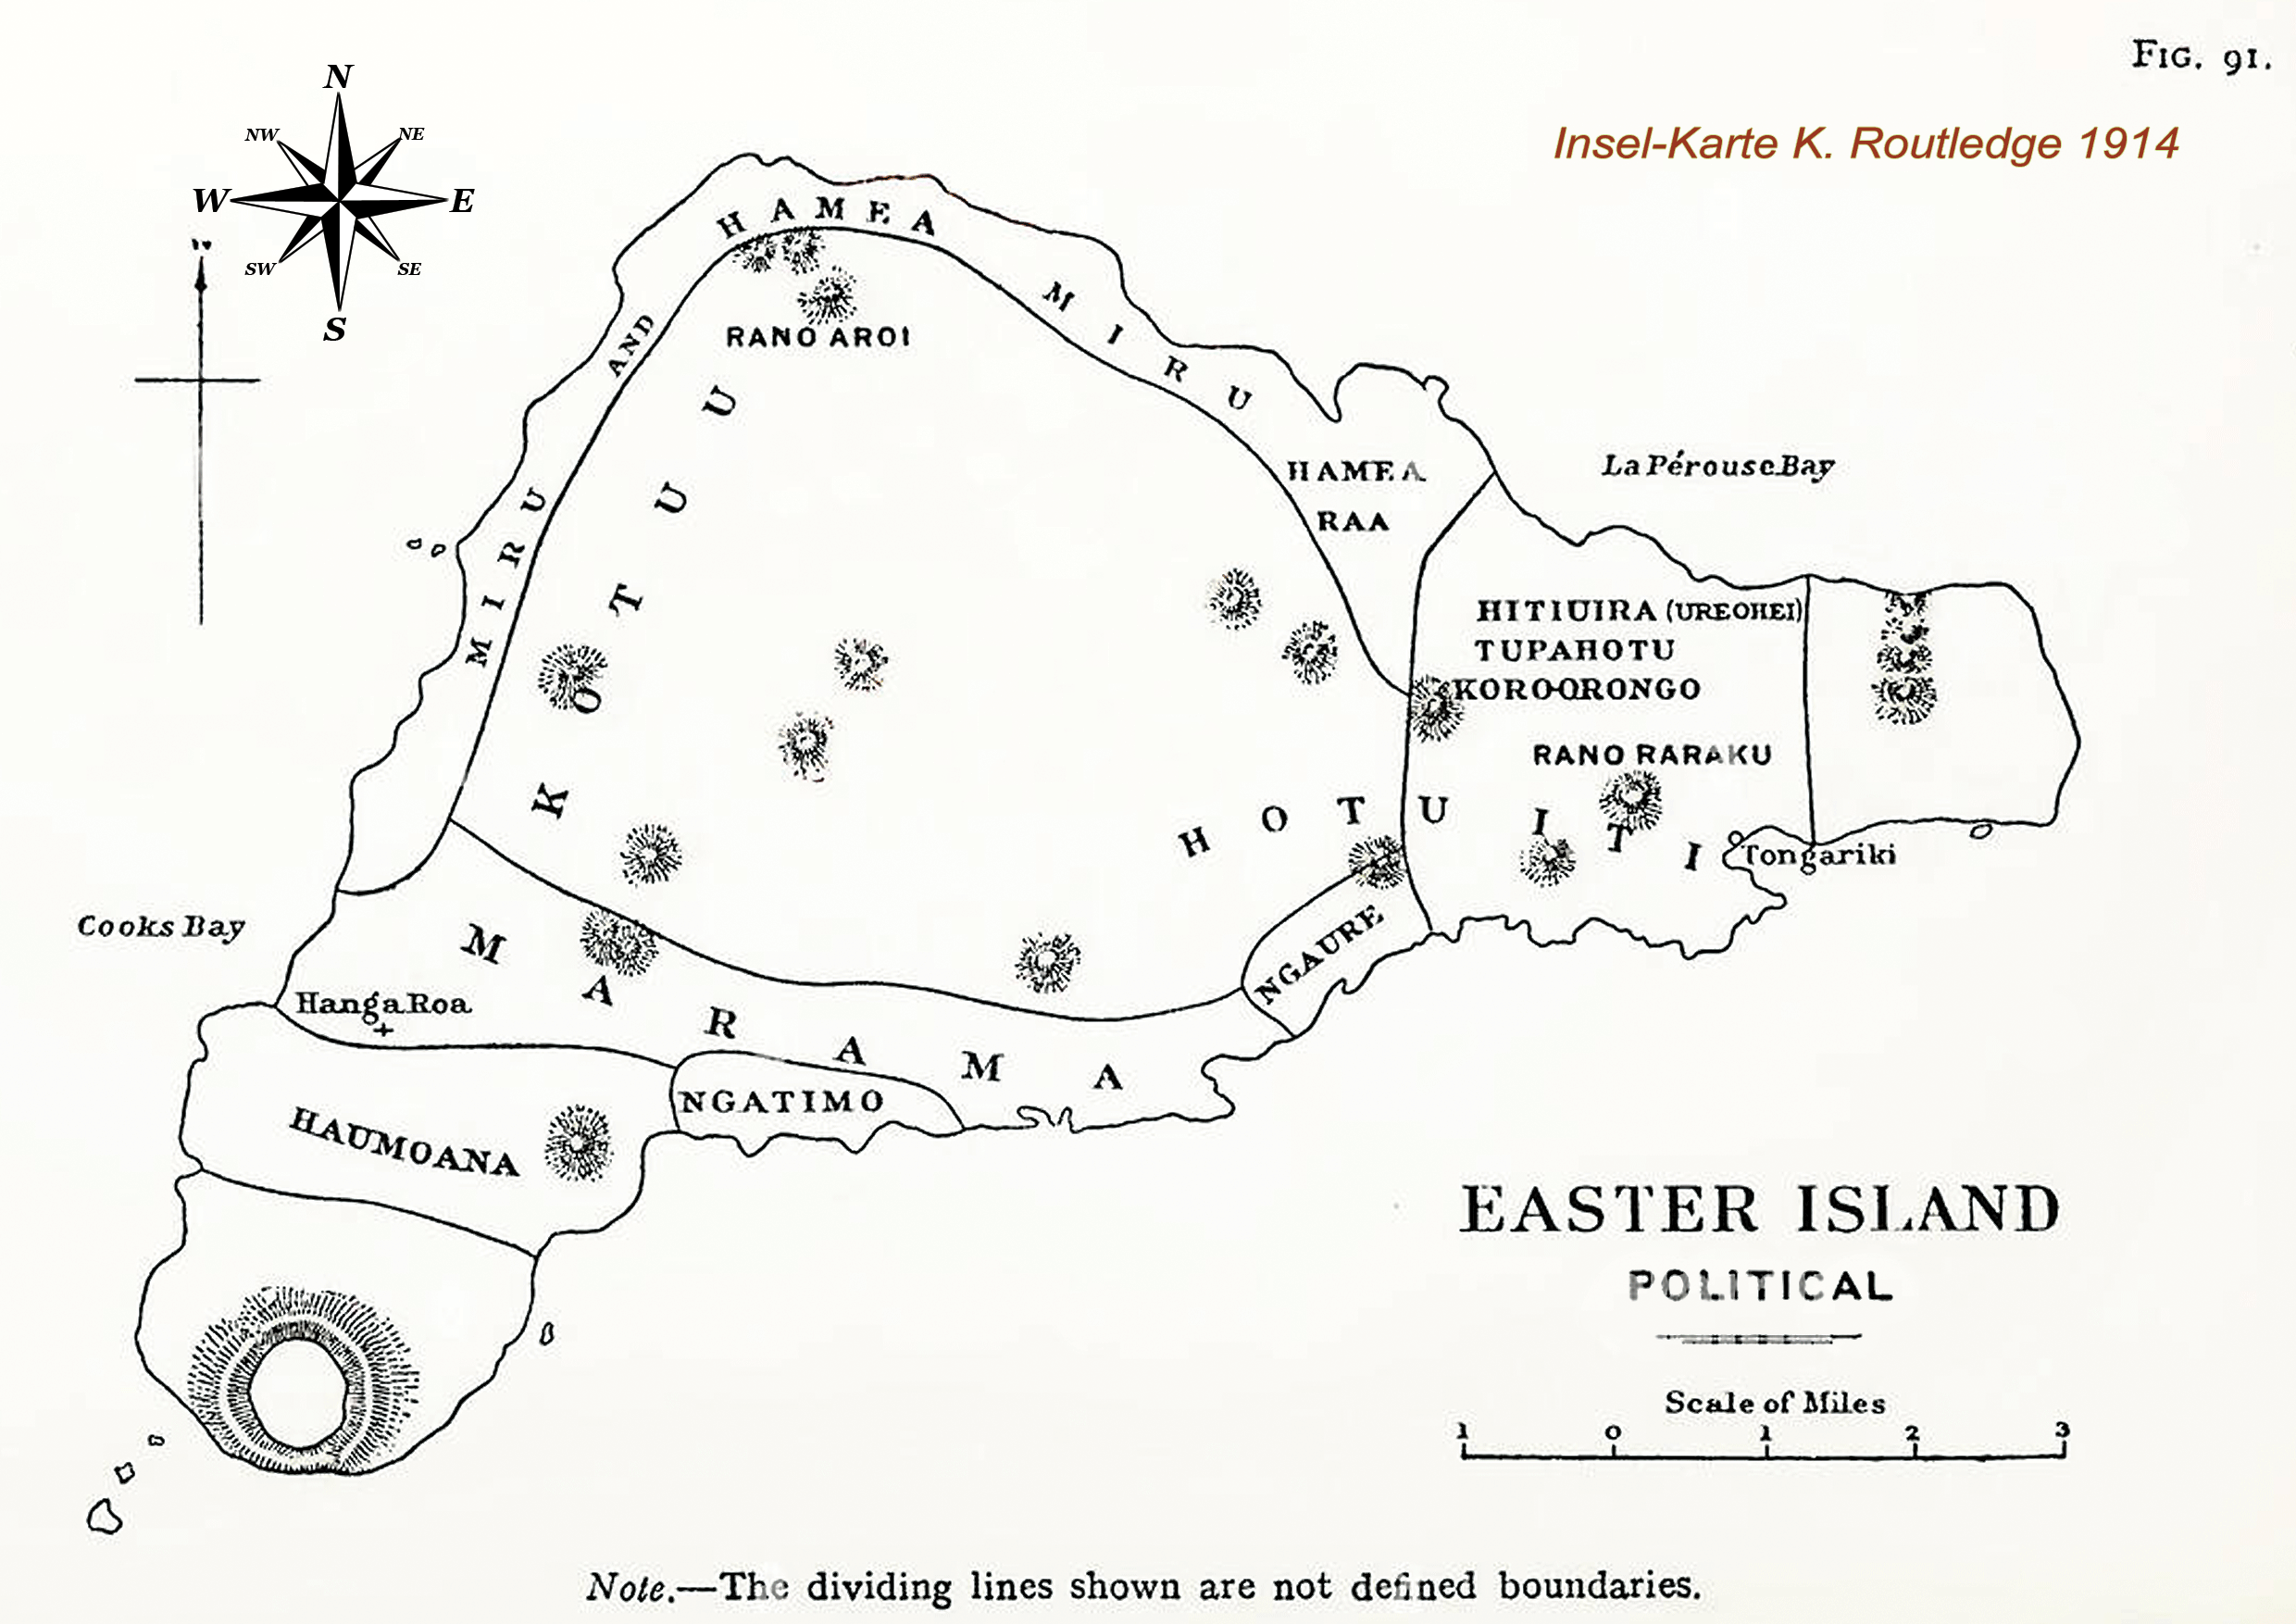 Karte von der Osterinsel aus dem Jahre 1914 von Katherine Routledge - Clan Grenzen